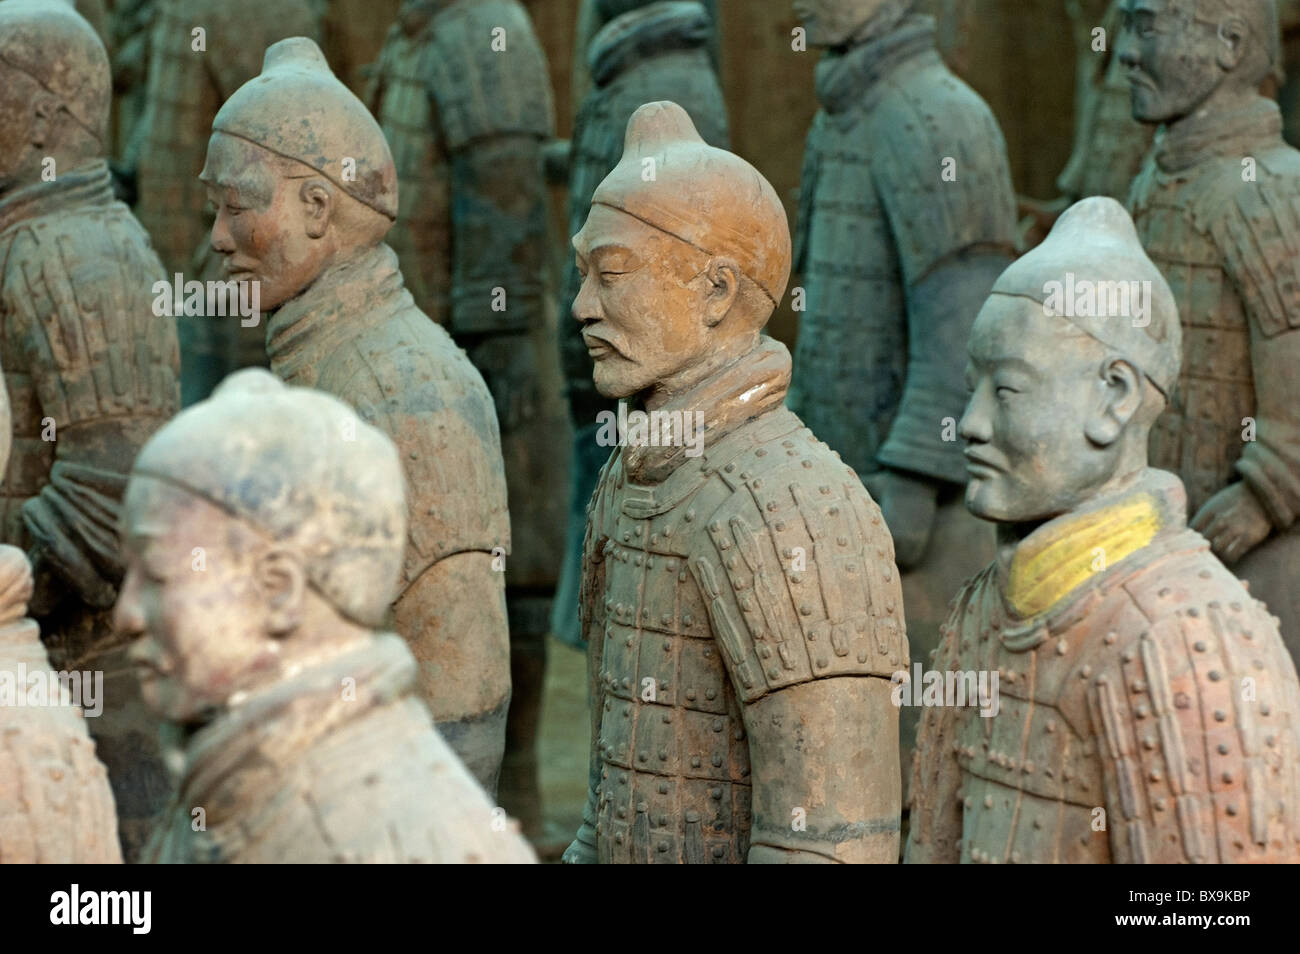 Ejército de guerreros de terracota de Xi'an, China Foto de stock